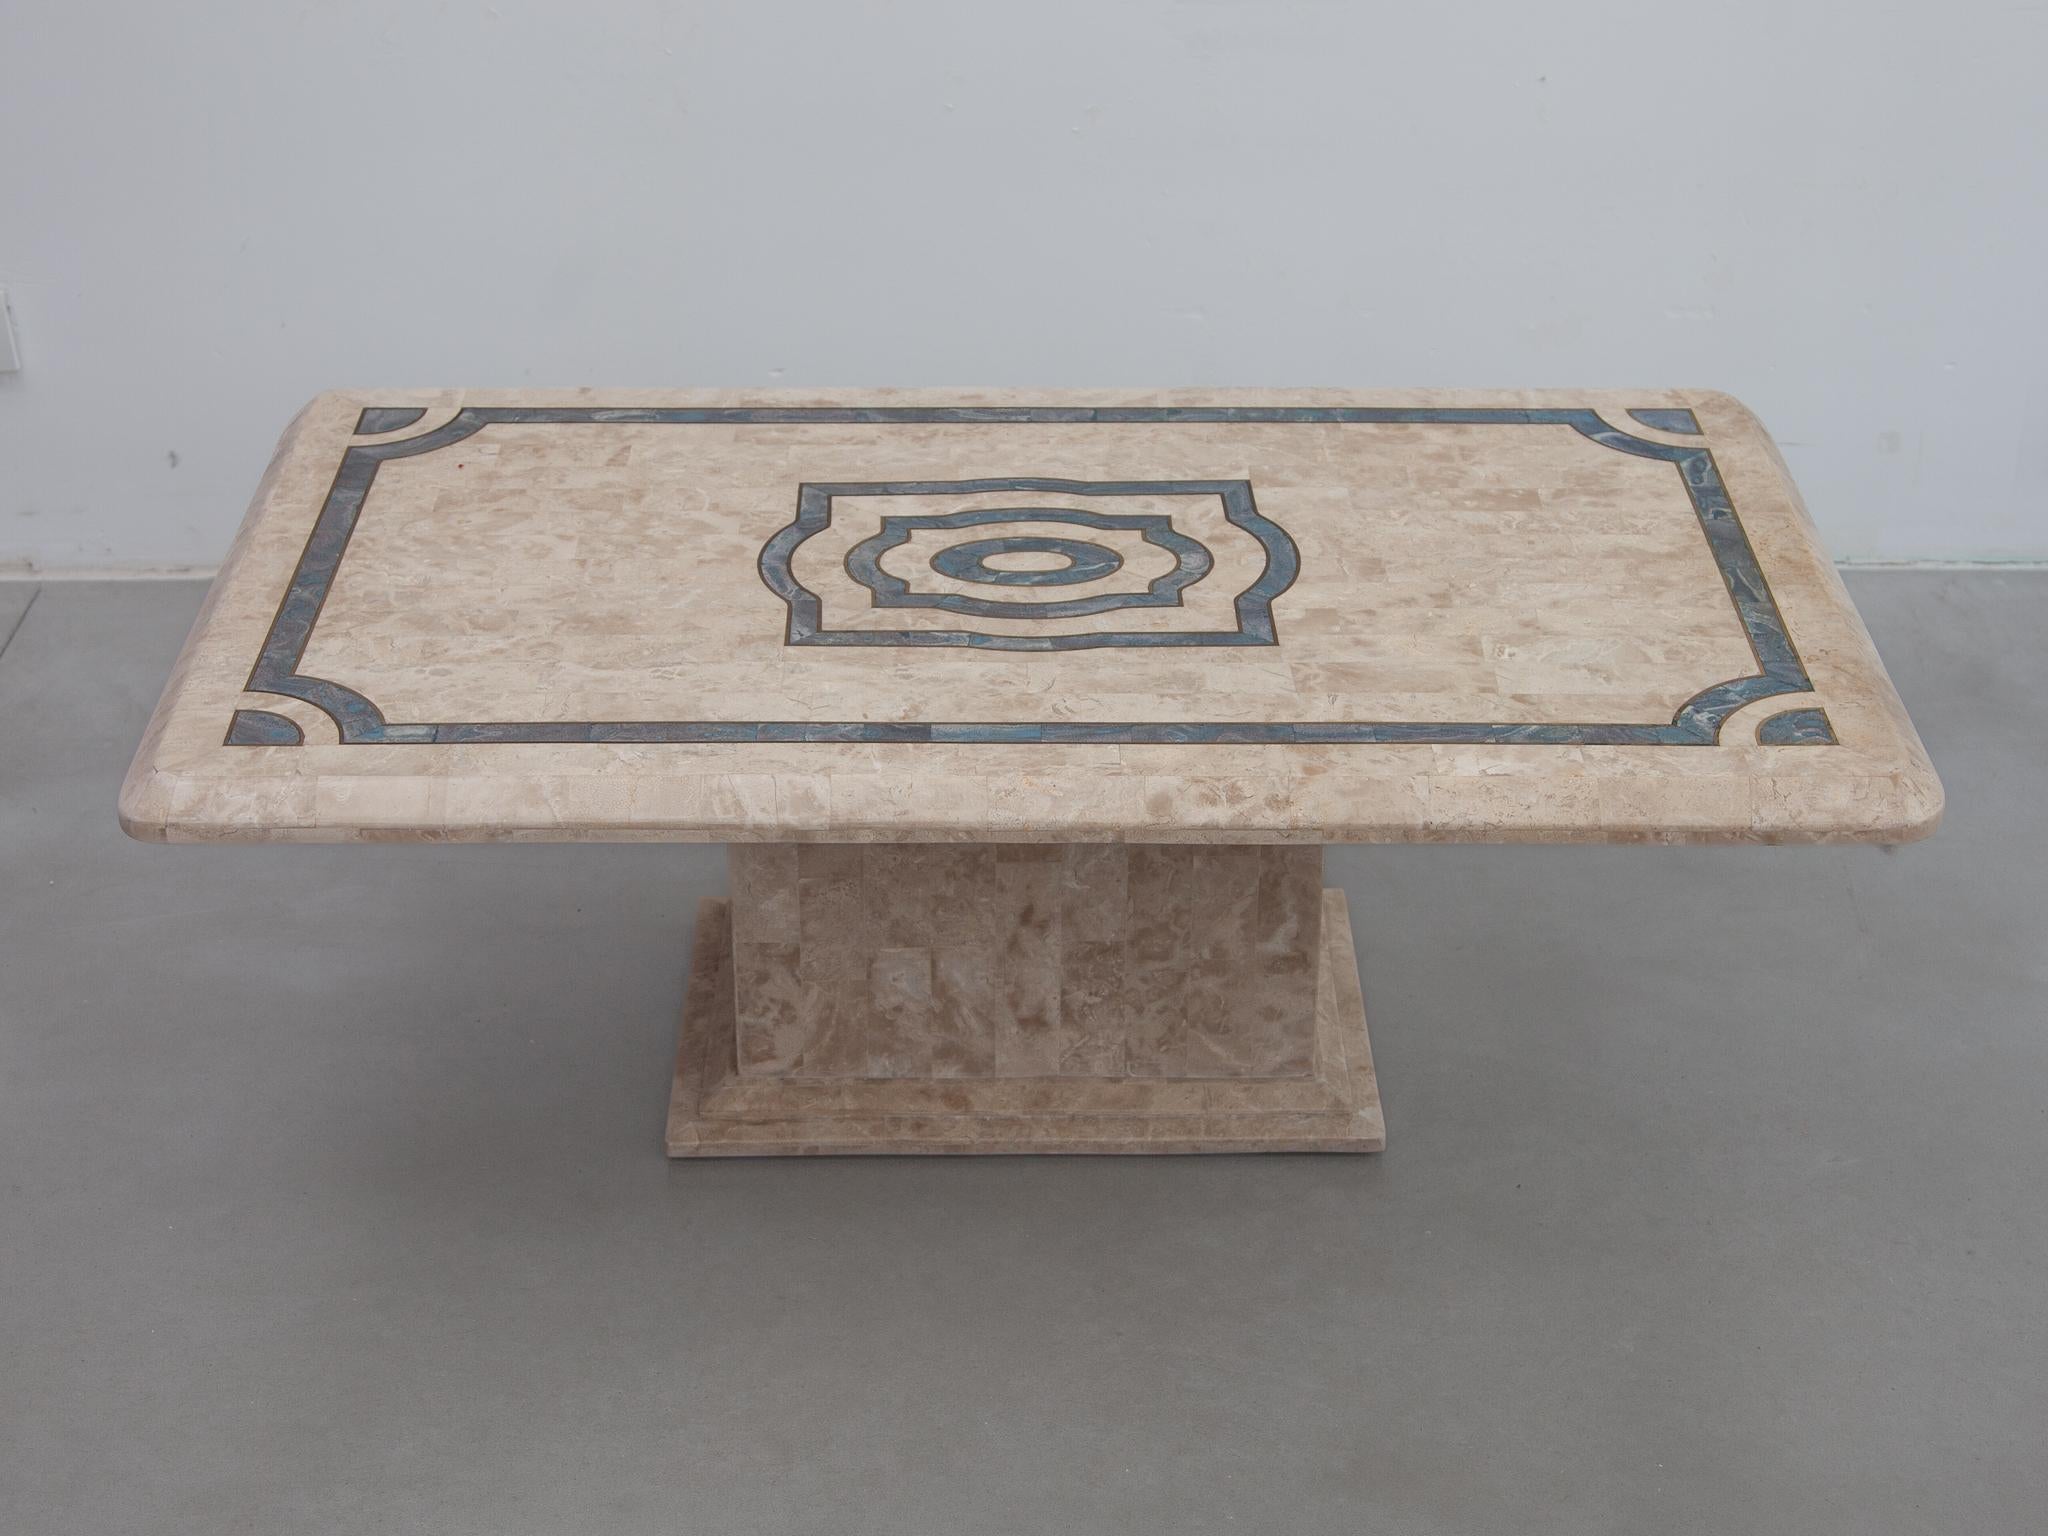 Table basse carrée de style postmoderne vintage sophistiqué des années 1970, Maitland Smith. Pierre tessellée et fossile avec incrustation bleue. 
